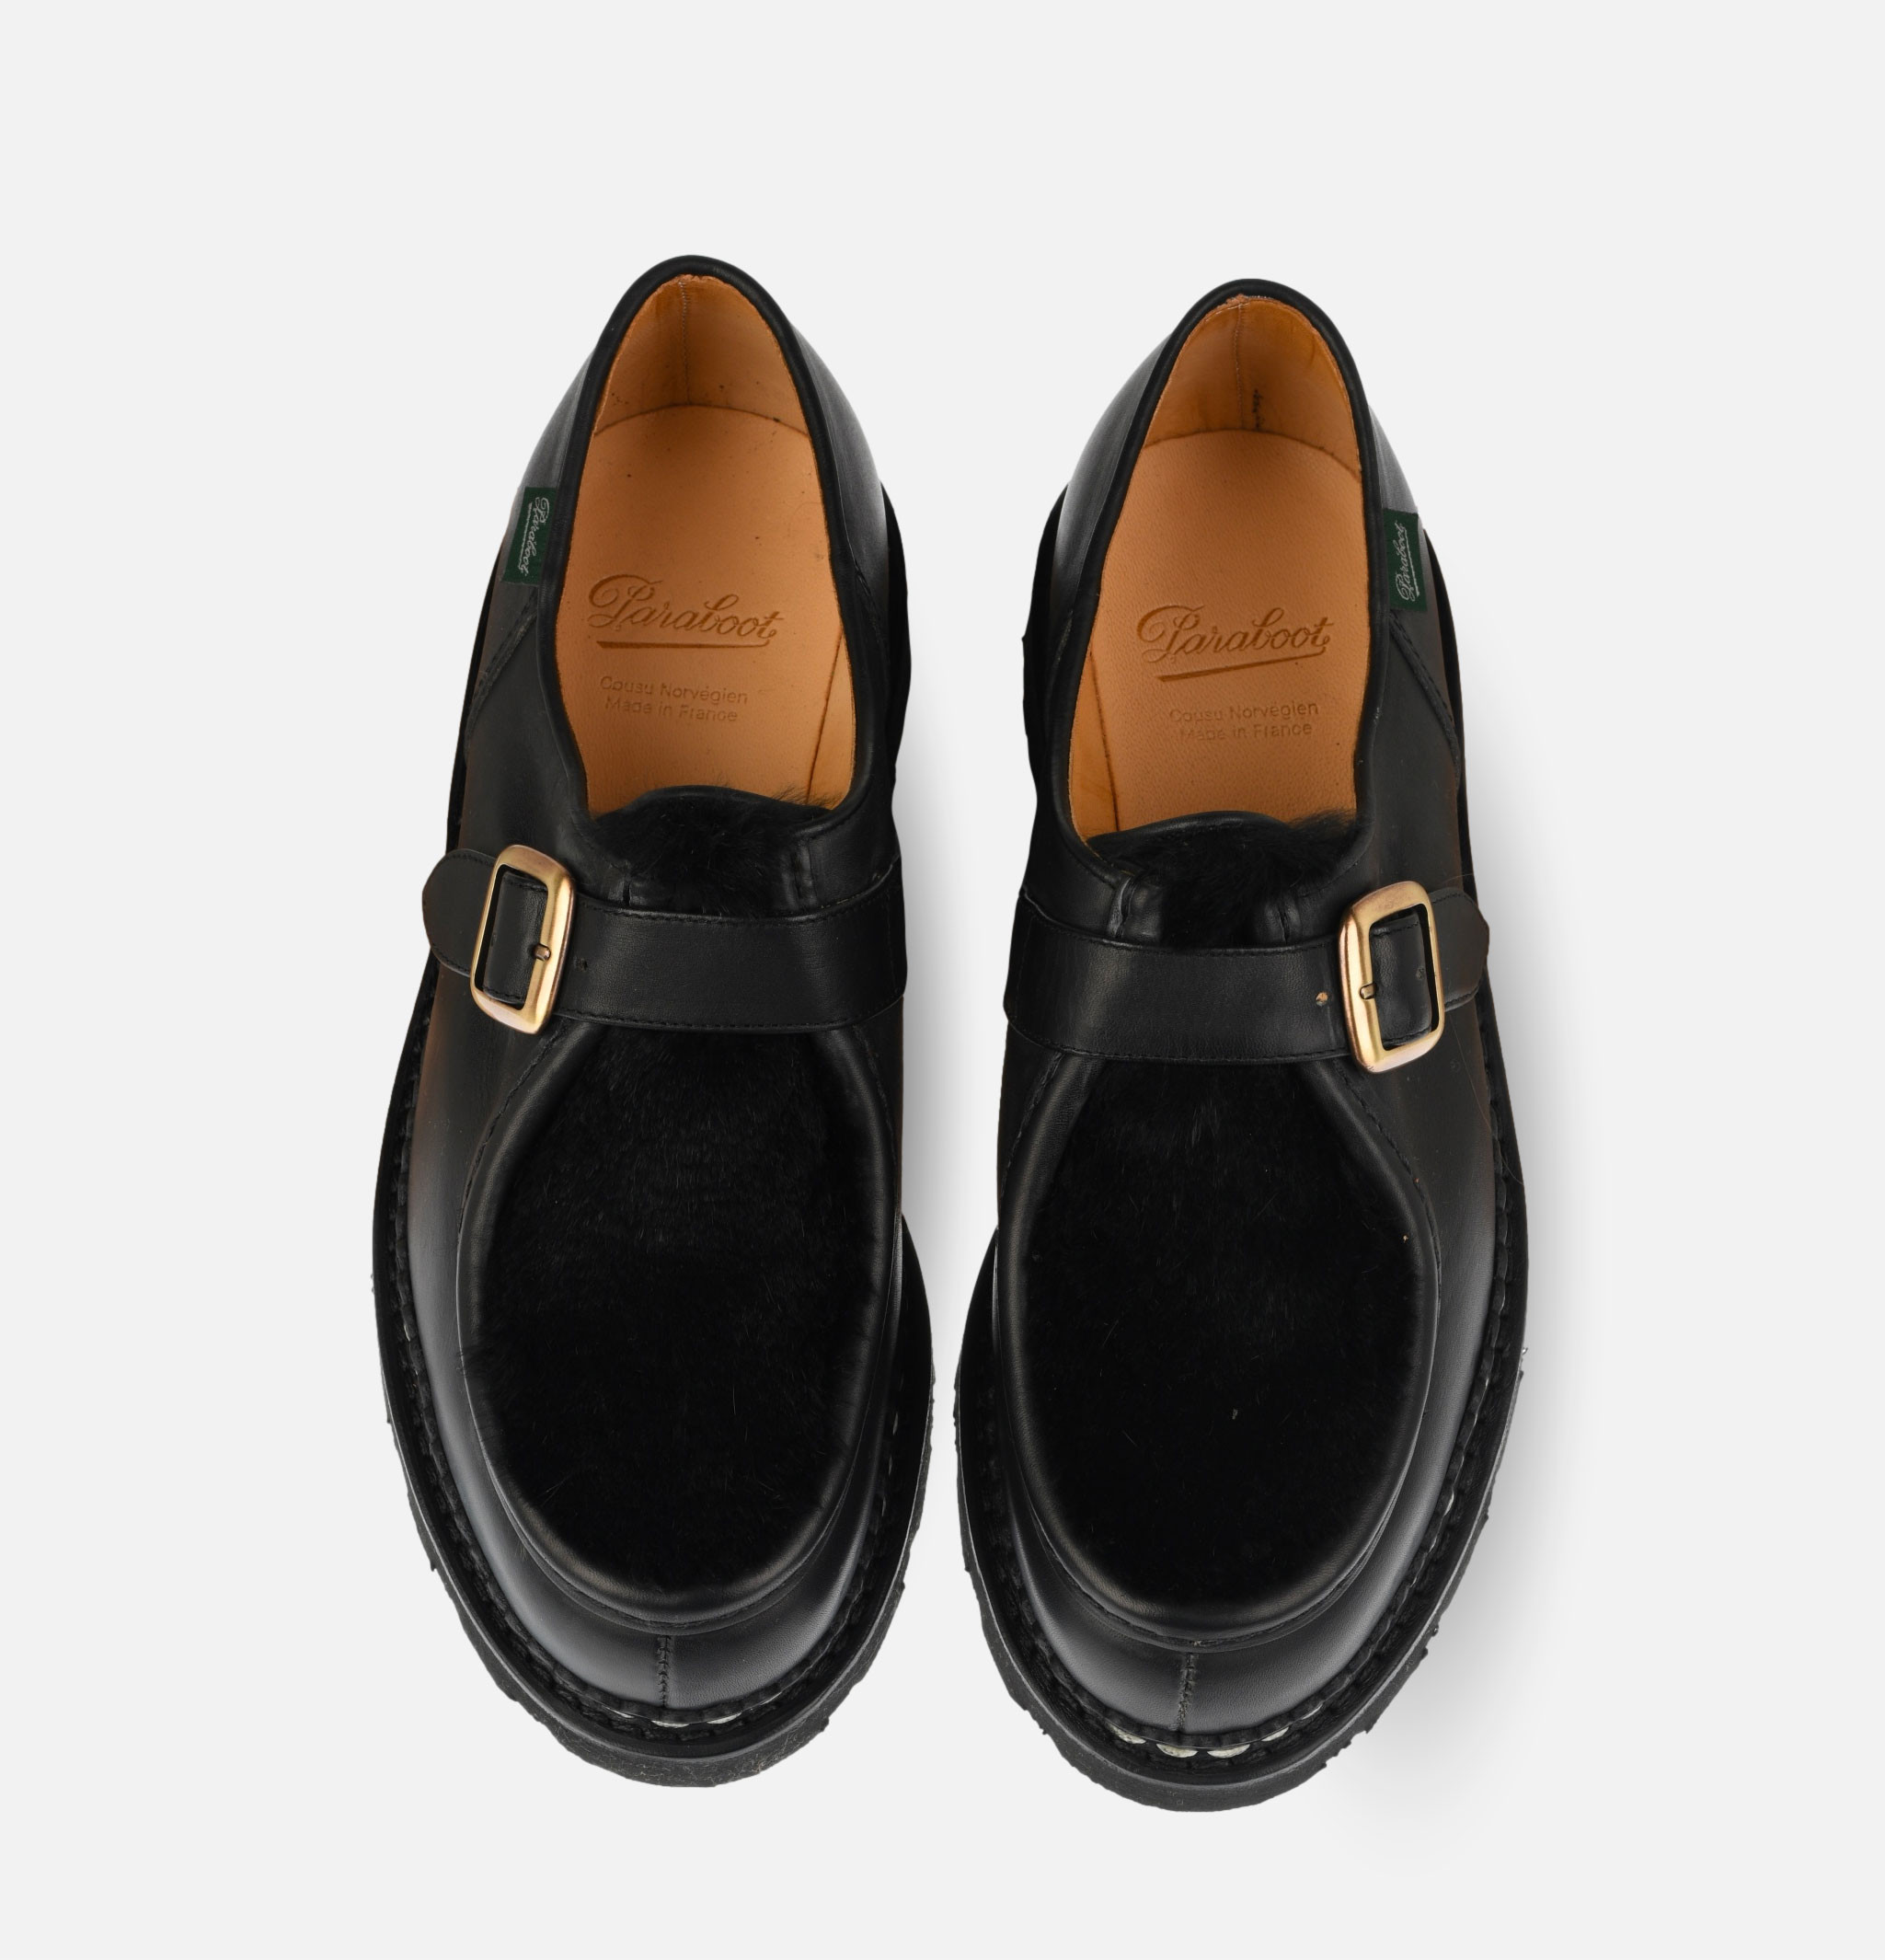 Michael Bride Shoes Lis Noir Lapin